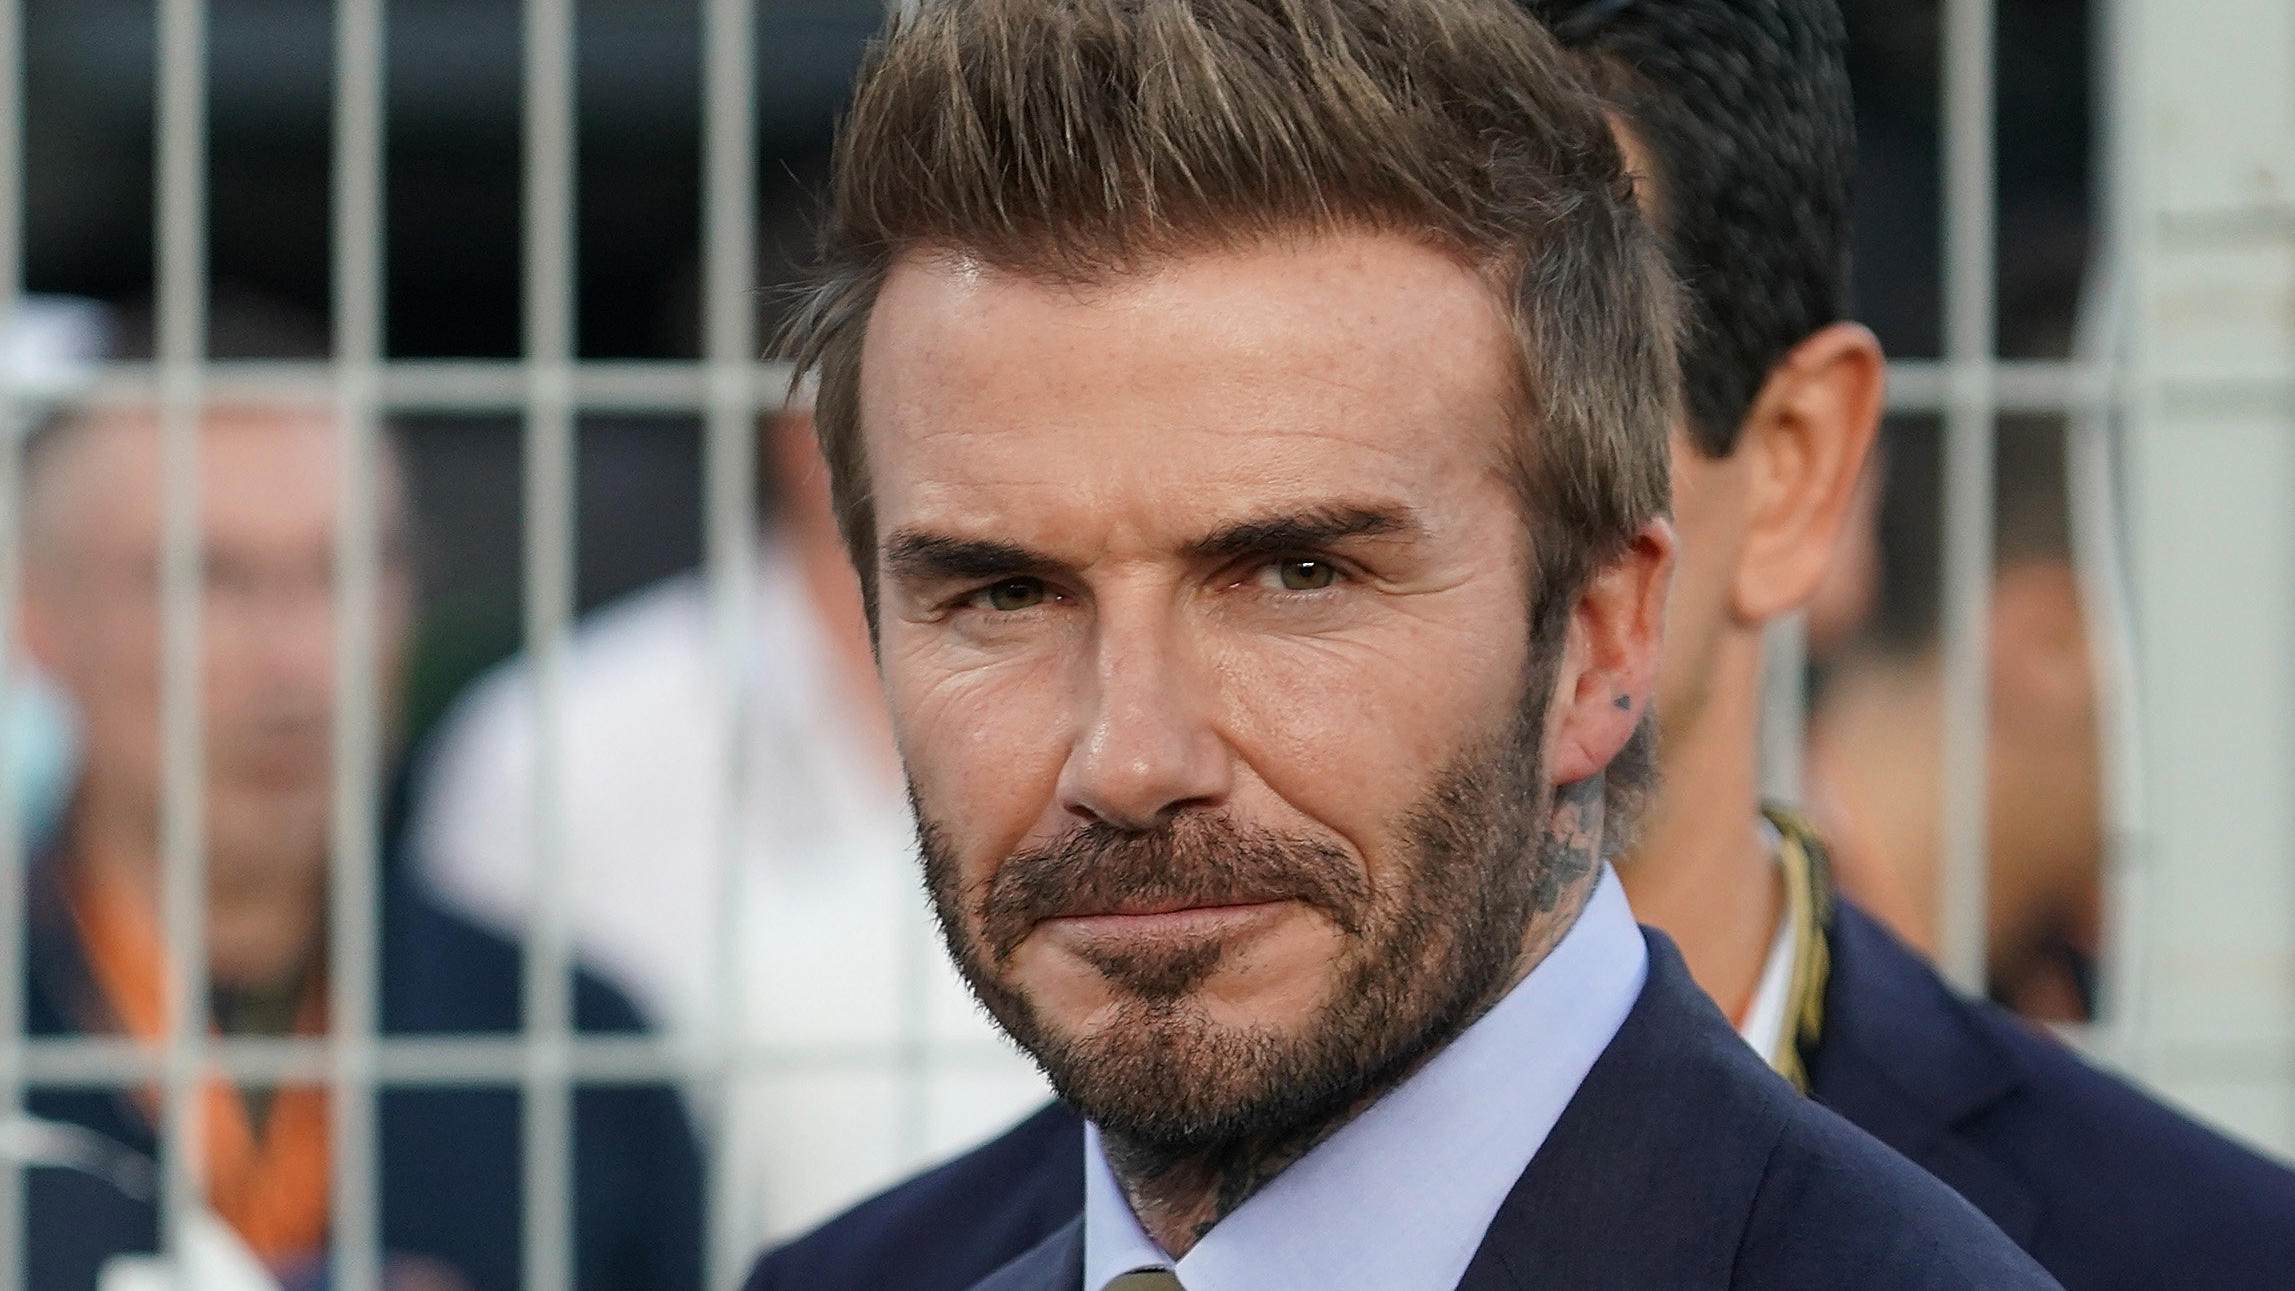 ARCHIV - 21.11.2021, Katar, Lusail: David Beckham, ehemaliger Fußballprofi, steht vor Rennbeginn der Formel-1-Weltmeisteschaft Grand Prix von Katar auf der Strecke. (zu dpa «David Beckham steht in der Warteschlange für Blick auf Queen-Sarg») Foto: Ha